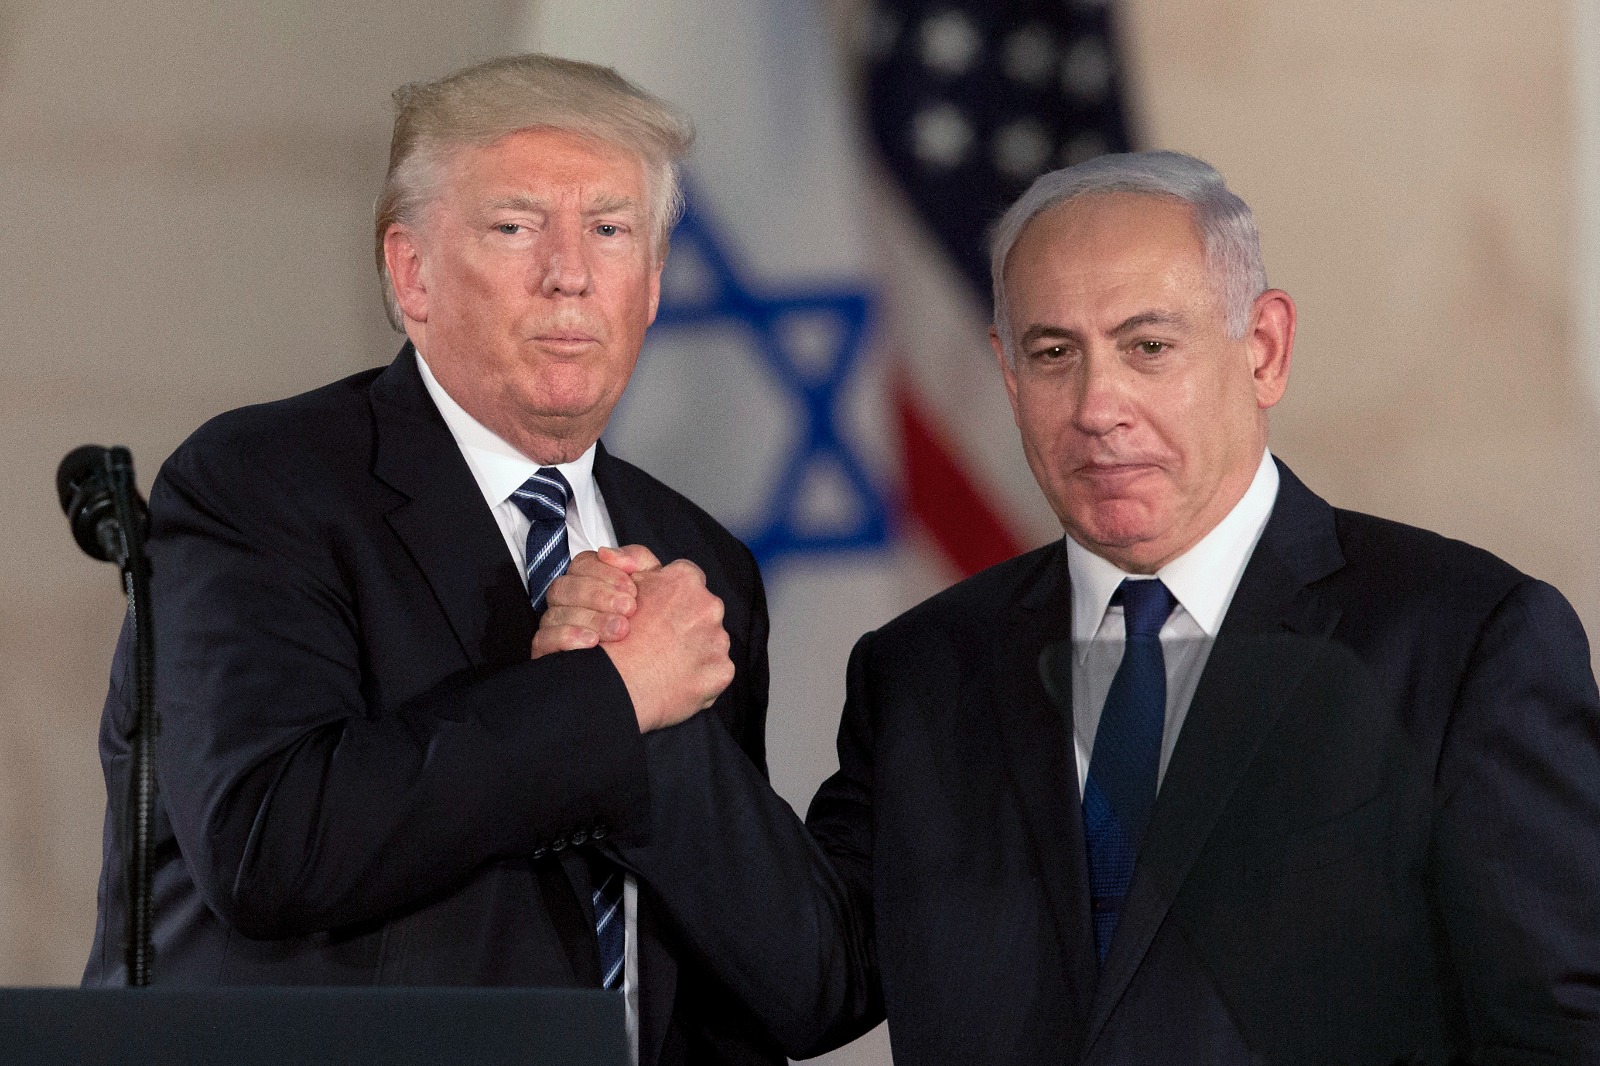 Trump recibirá a Netanyahu en su mansión de Mar-a-Lago; gobierno de Biden le resta importancia